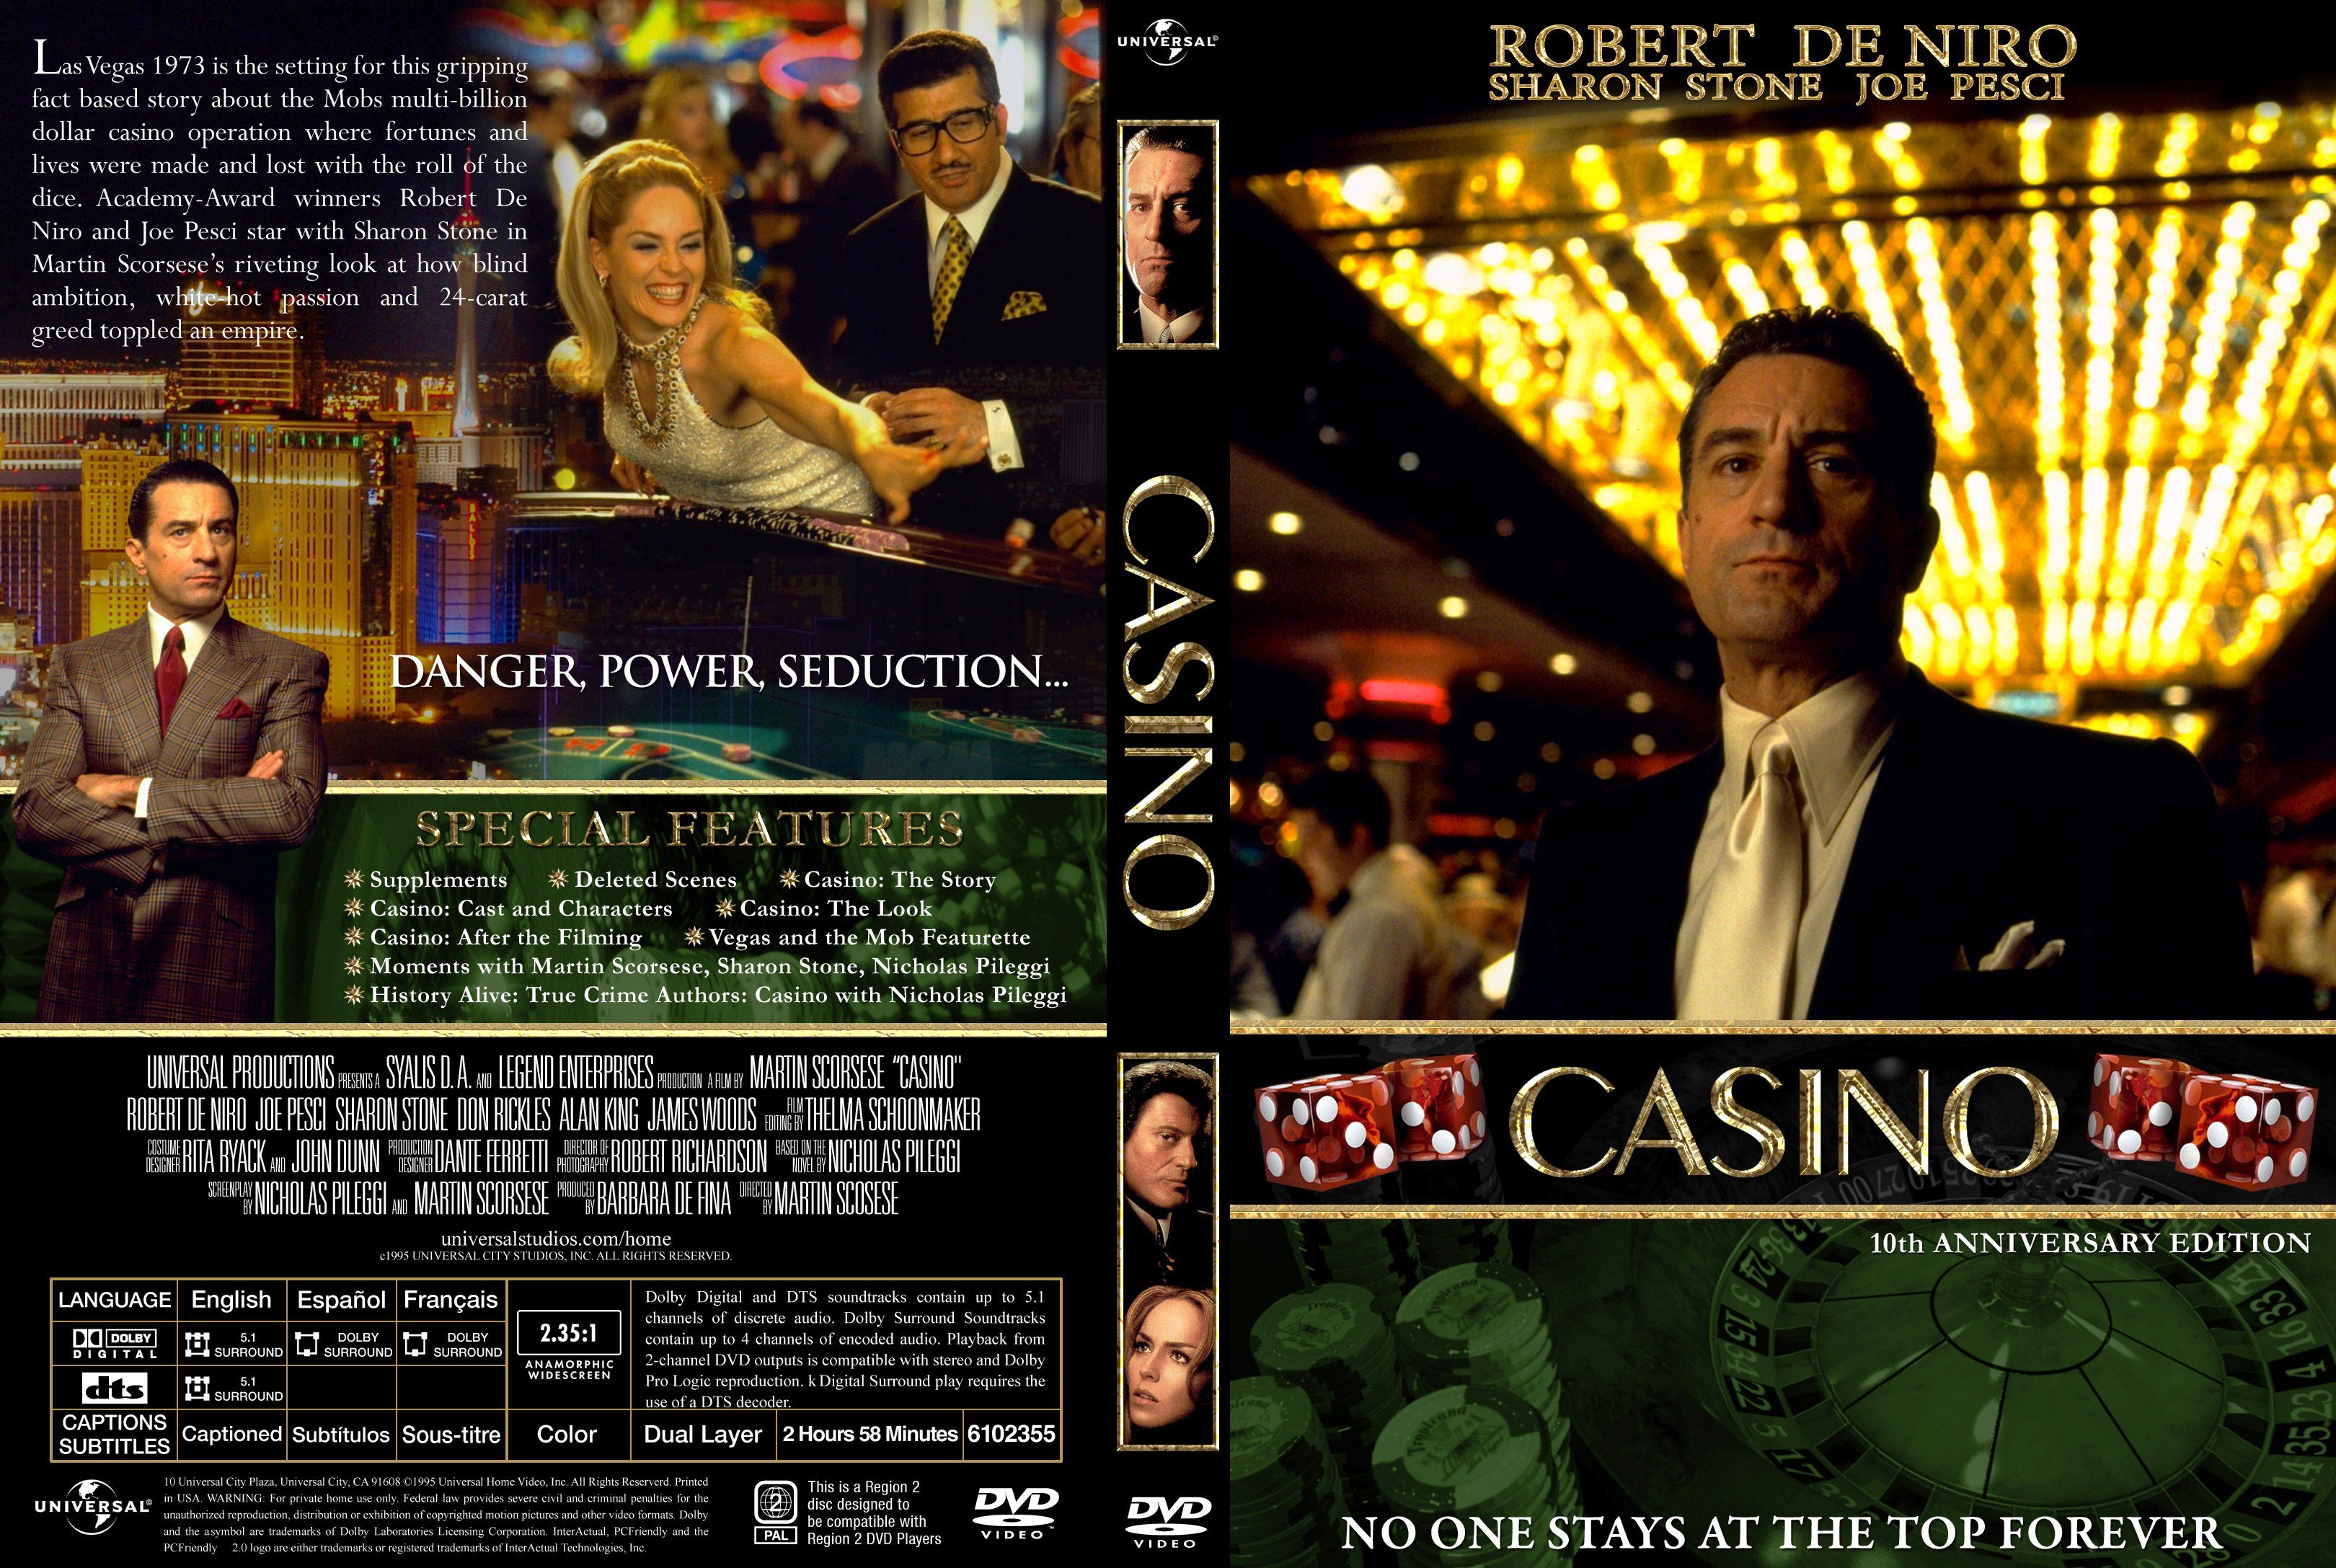 Descargar juegos casino online confiable Bilbao - 46550